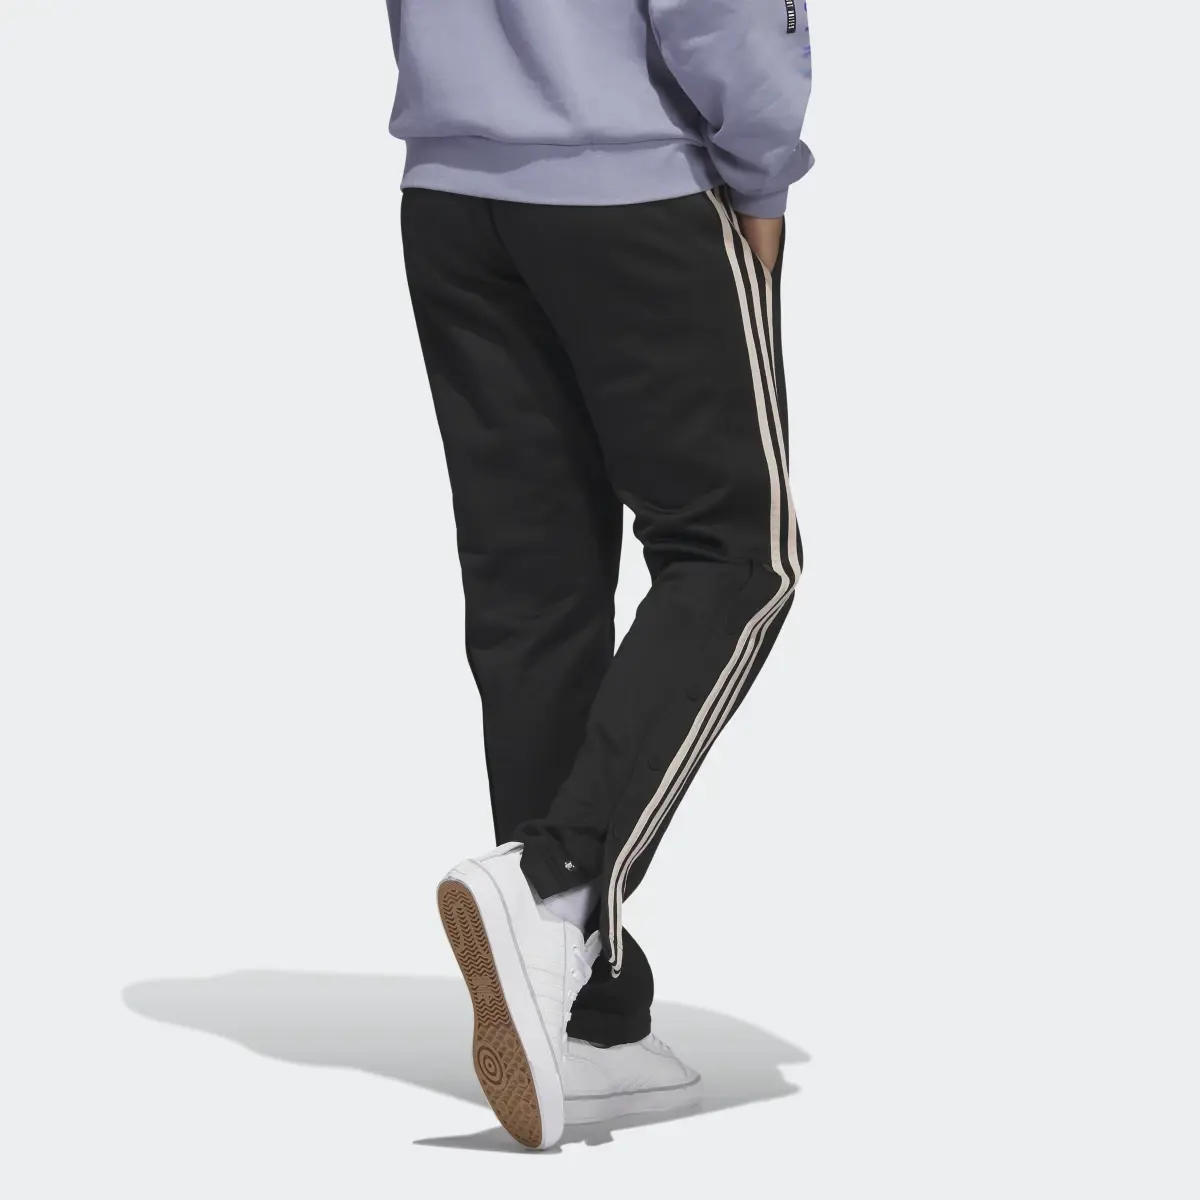 Adidas Originals Basketball Warm-Up Pants - HY2751